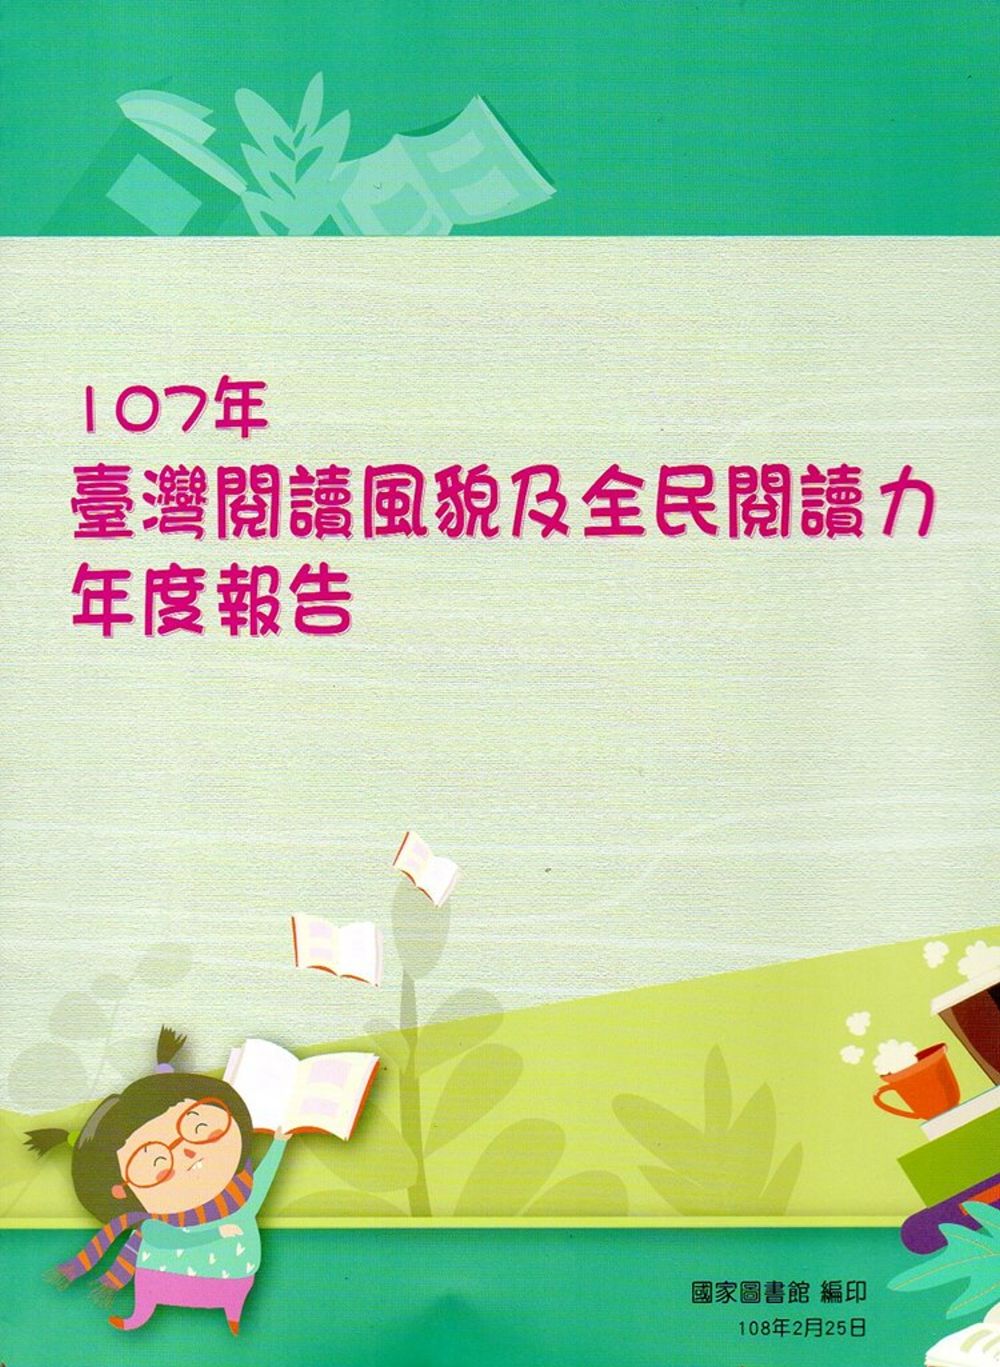 107年臺灣閱讀風貌及全民閱讀力年度報告